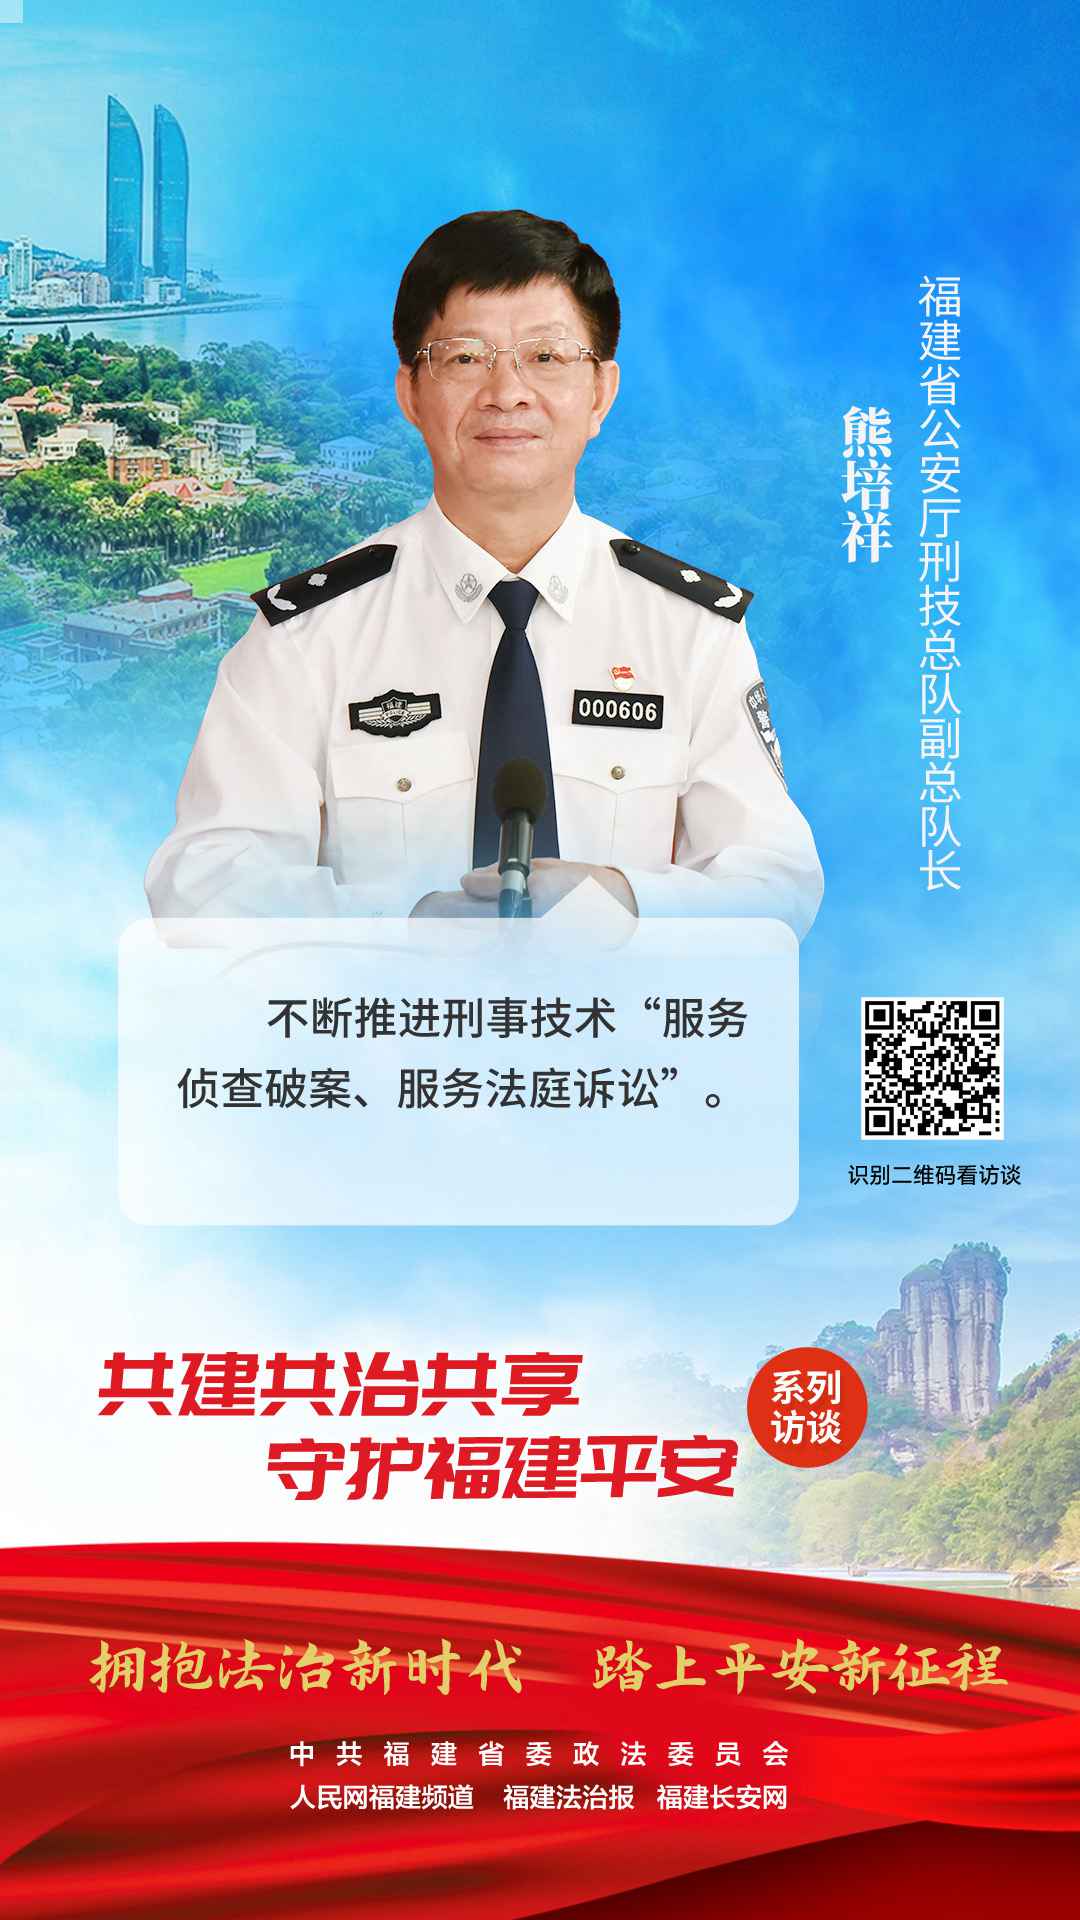 福建省公安廳刑事技術總隊副總隊長 熊培祥